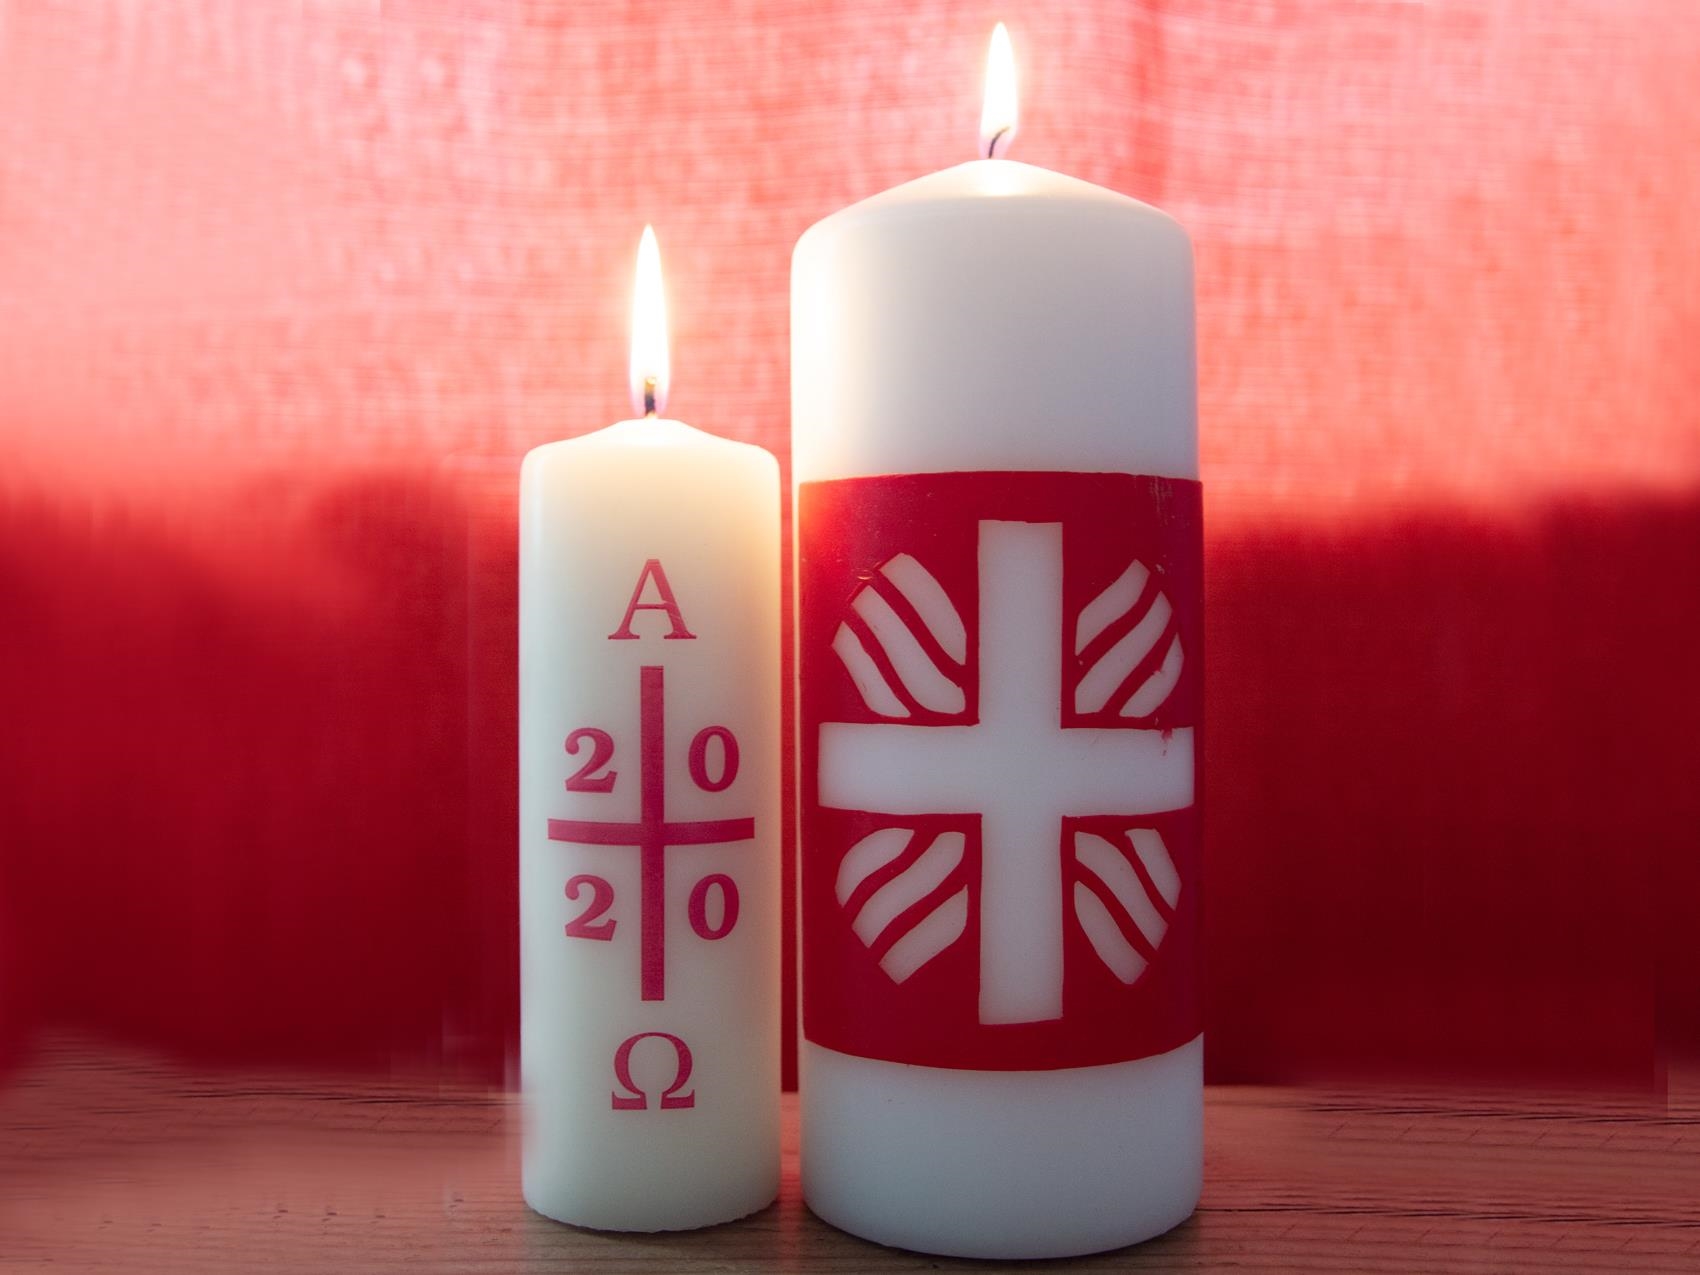 Osterkerze 2020 und Caritas-Kerze nebeneinander